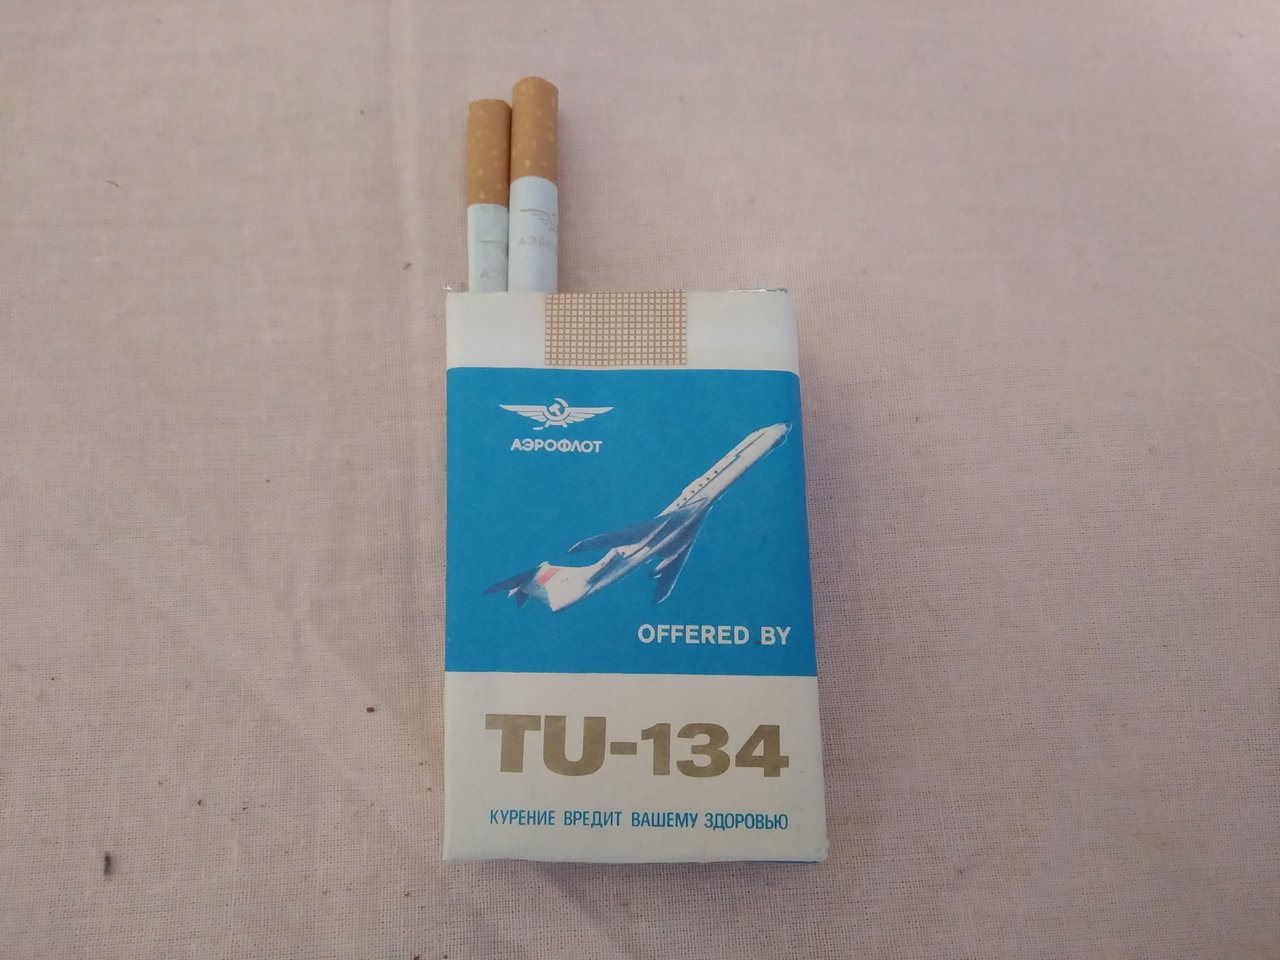 papierosy tu-134 3.jpg